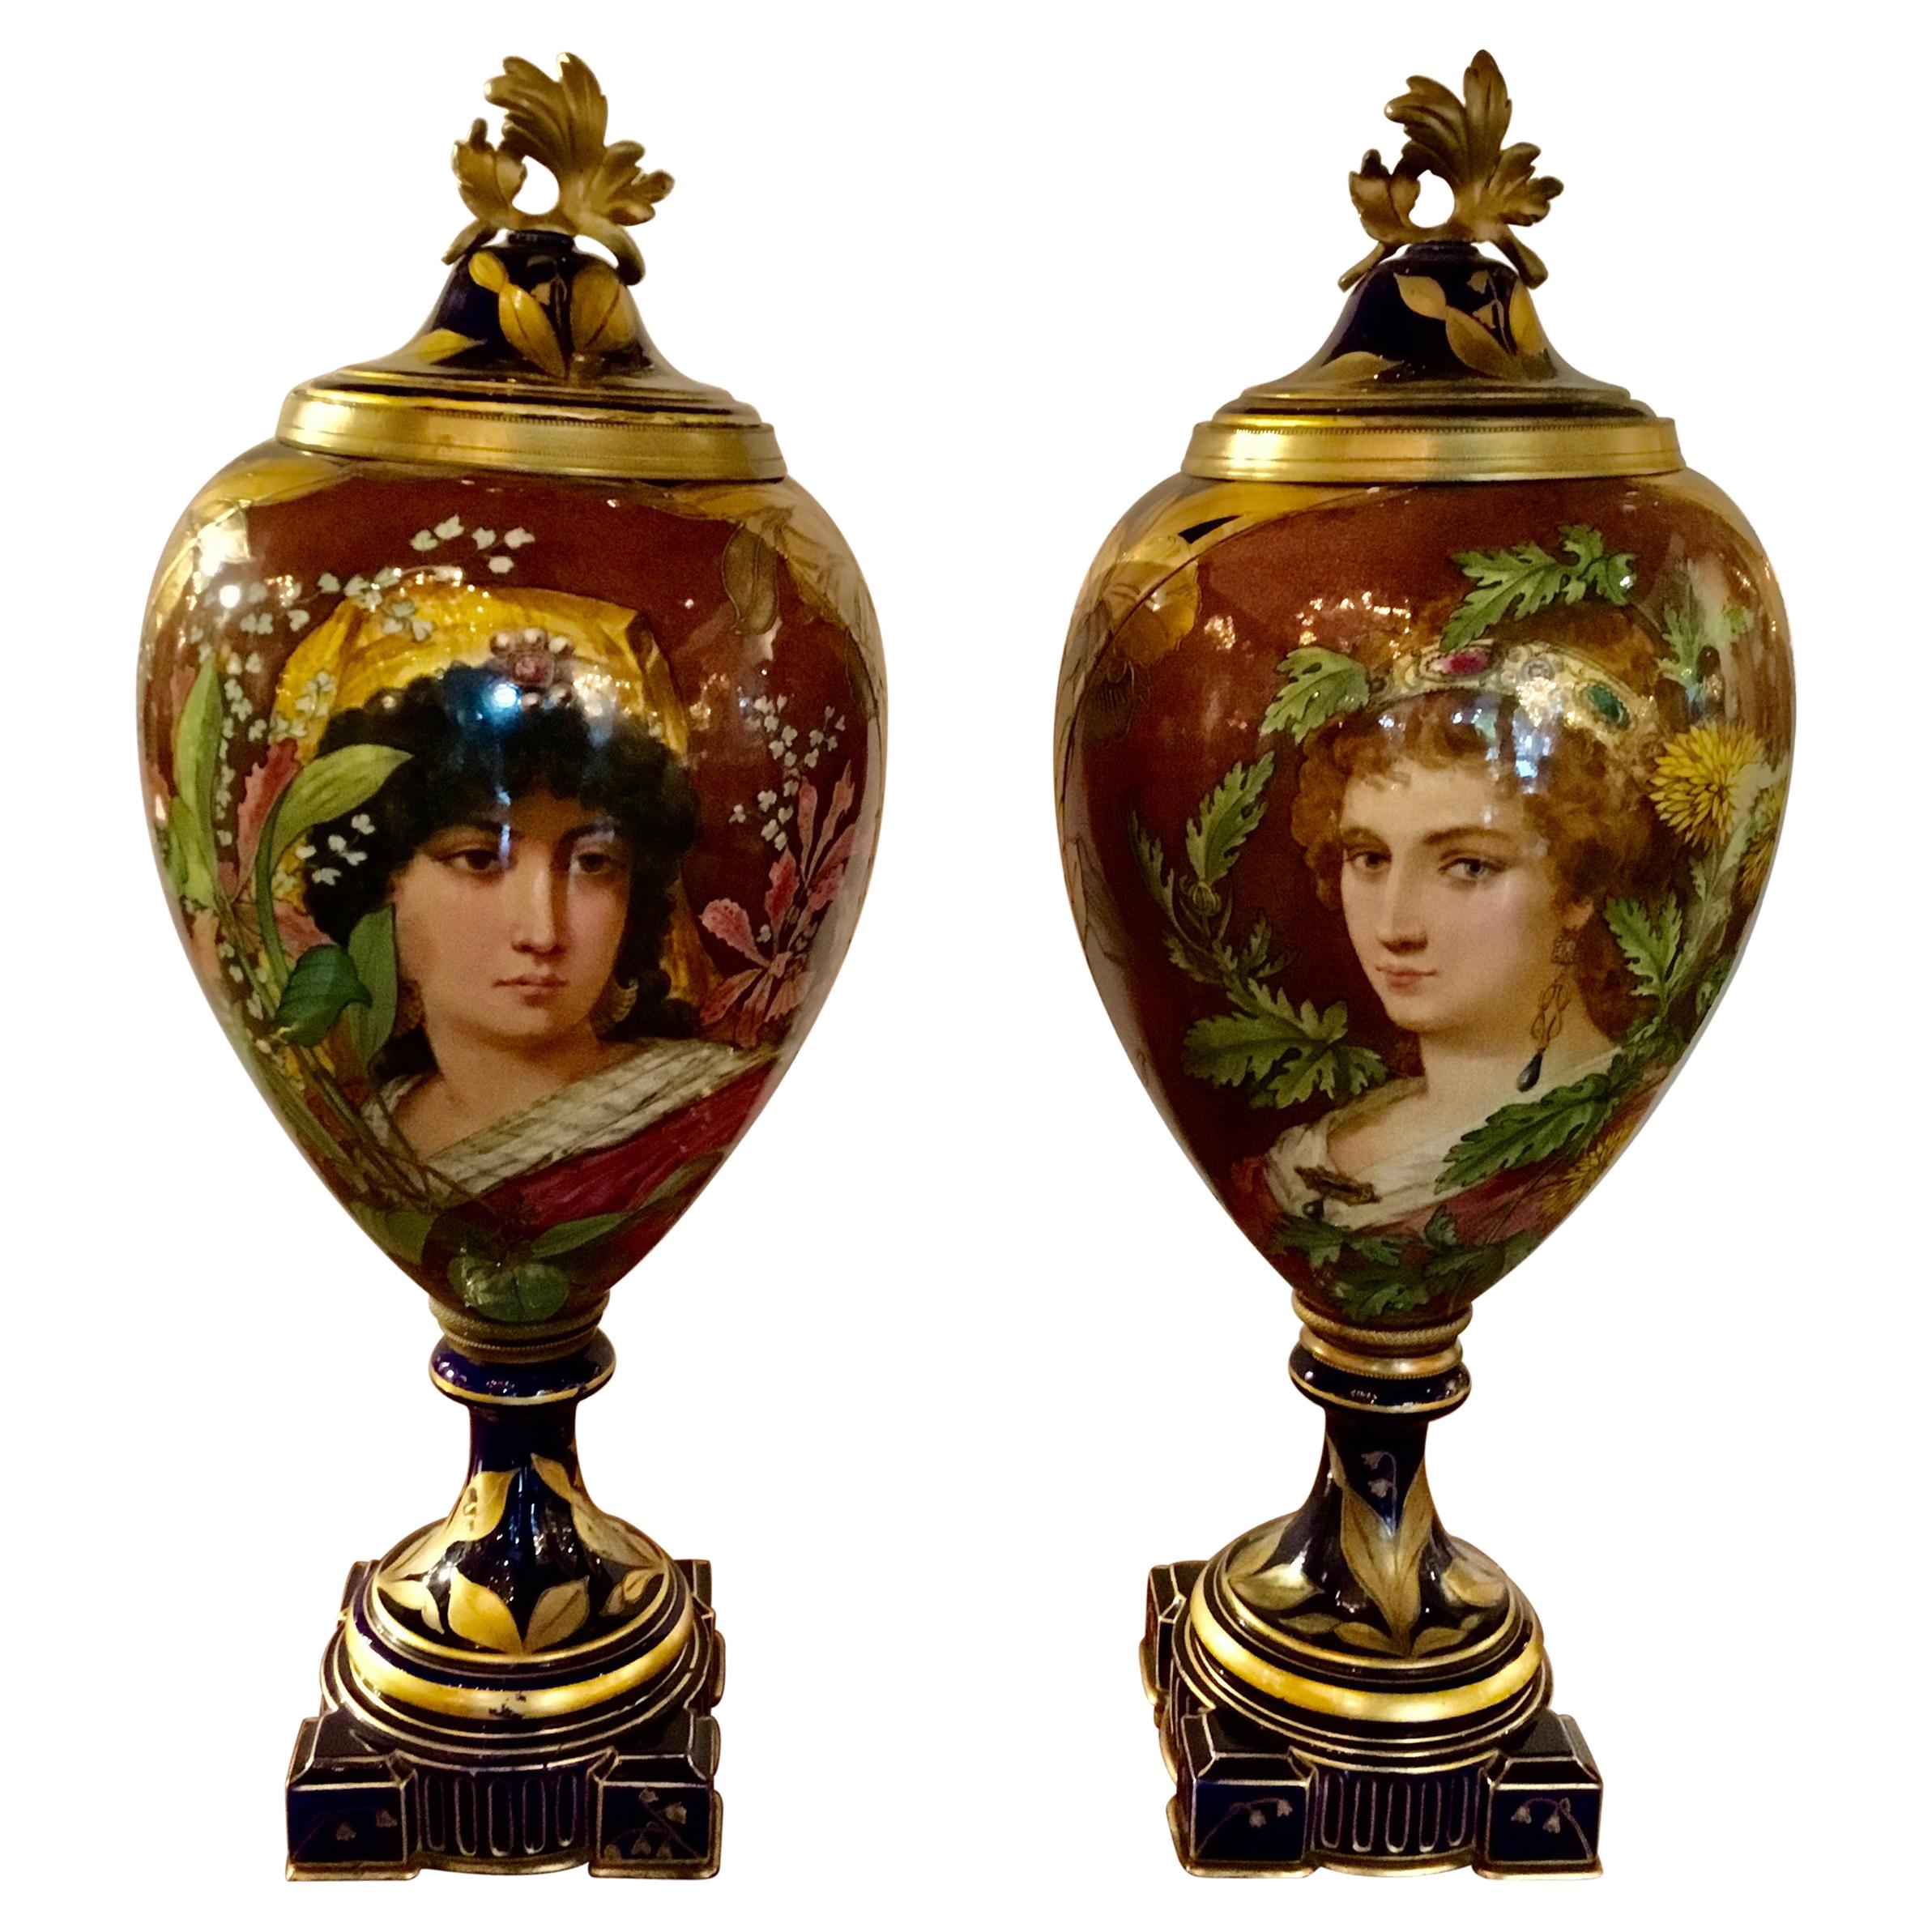 Pair of French Porcelain Art Nouveau Portrait Urns, Gilt Bronze Mounted C. 1900